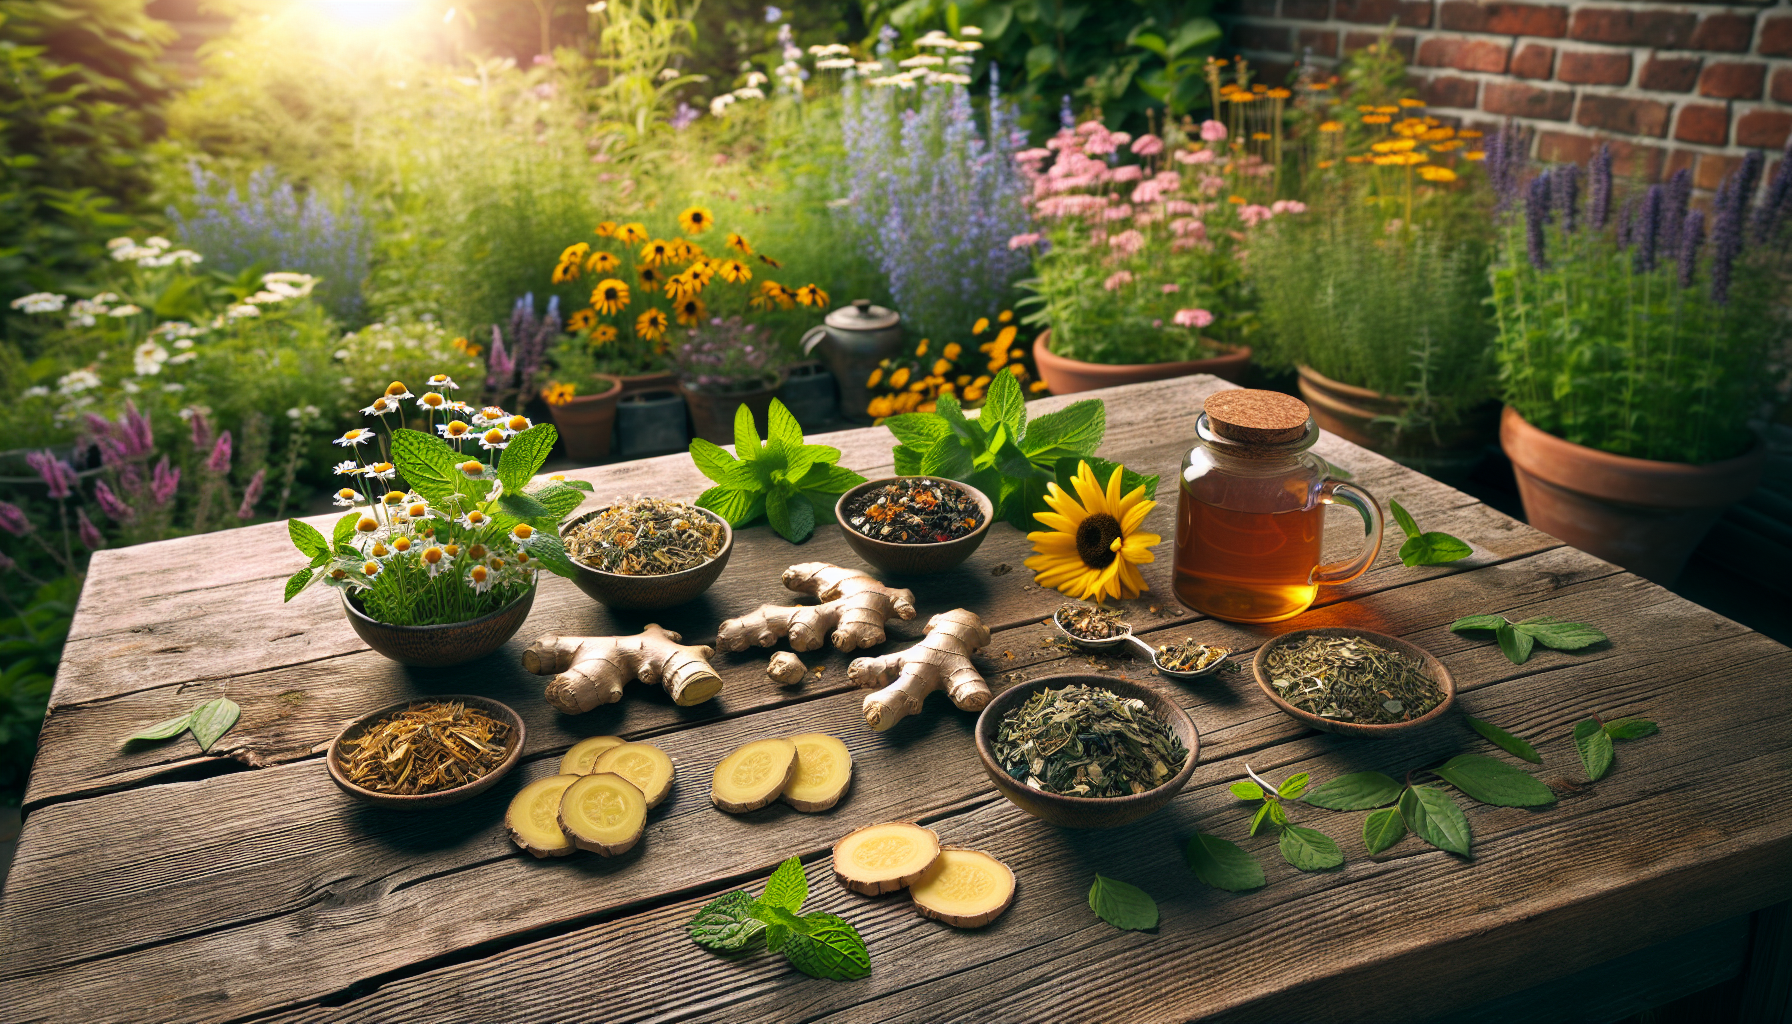 Assortment of popular herbal tea varieties